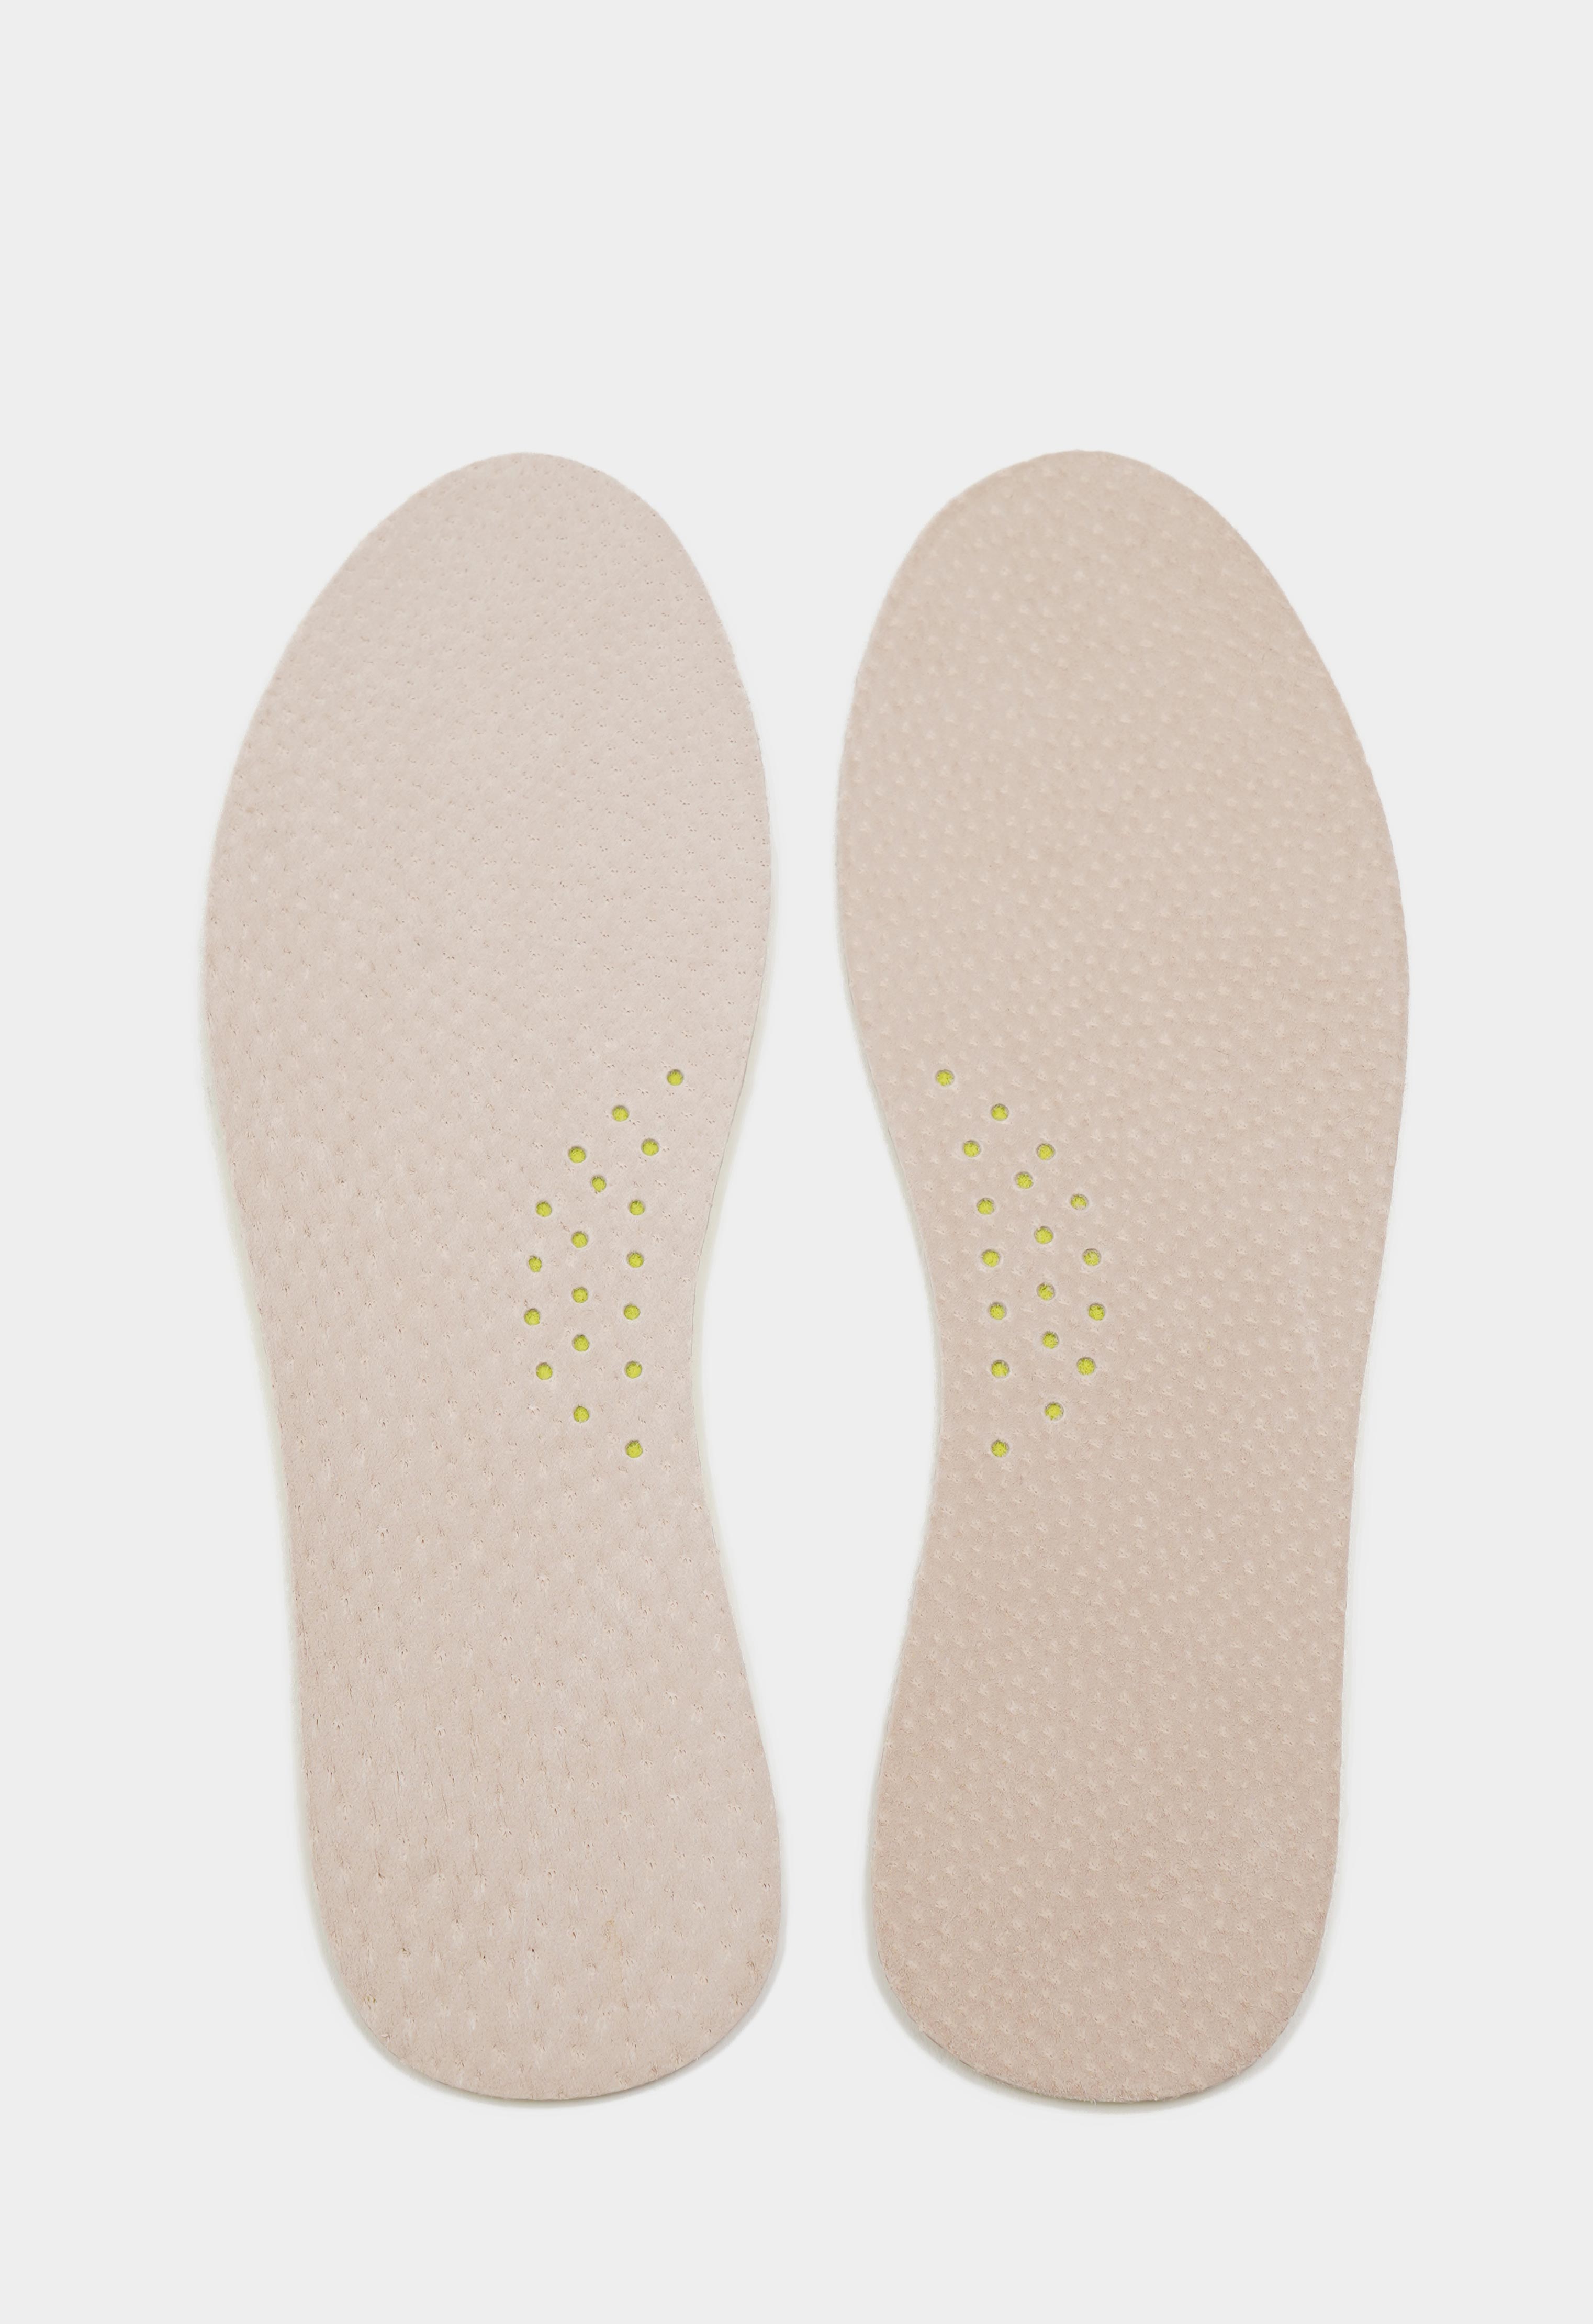 Уход за обувью 20-8958 TARRAGO - Стельки LEDER FOAM, натуральная кожа/пеноматериал, р.39/40 уход за обувью 20 8955 tarrago стельки pecari carbon натуральная кожа латекс р 35 36